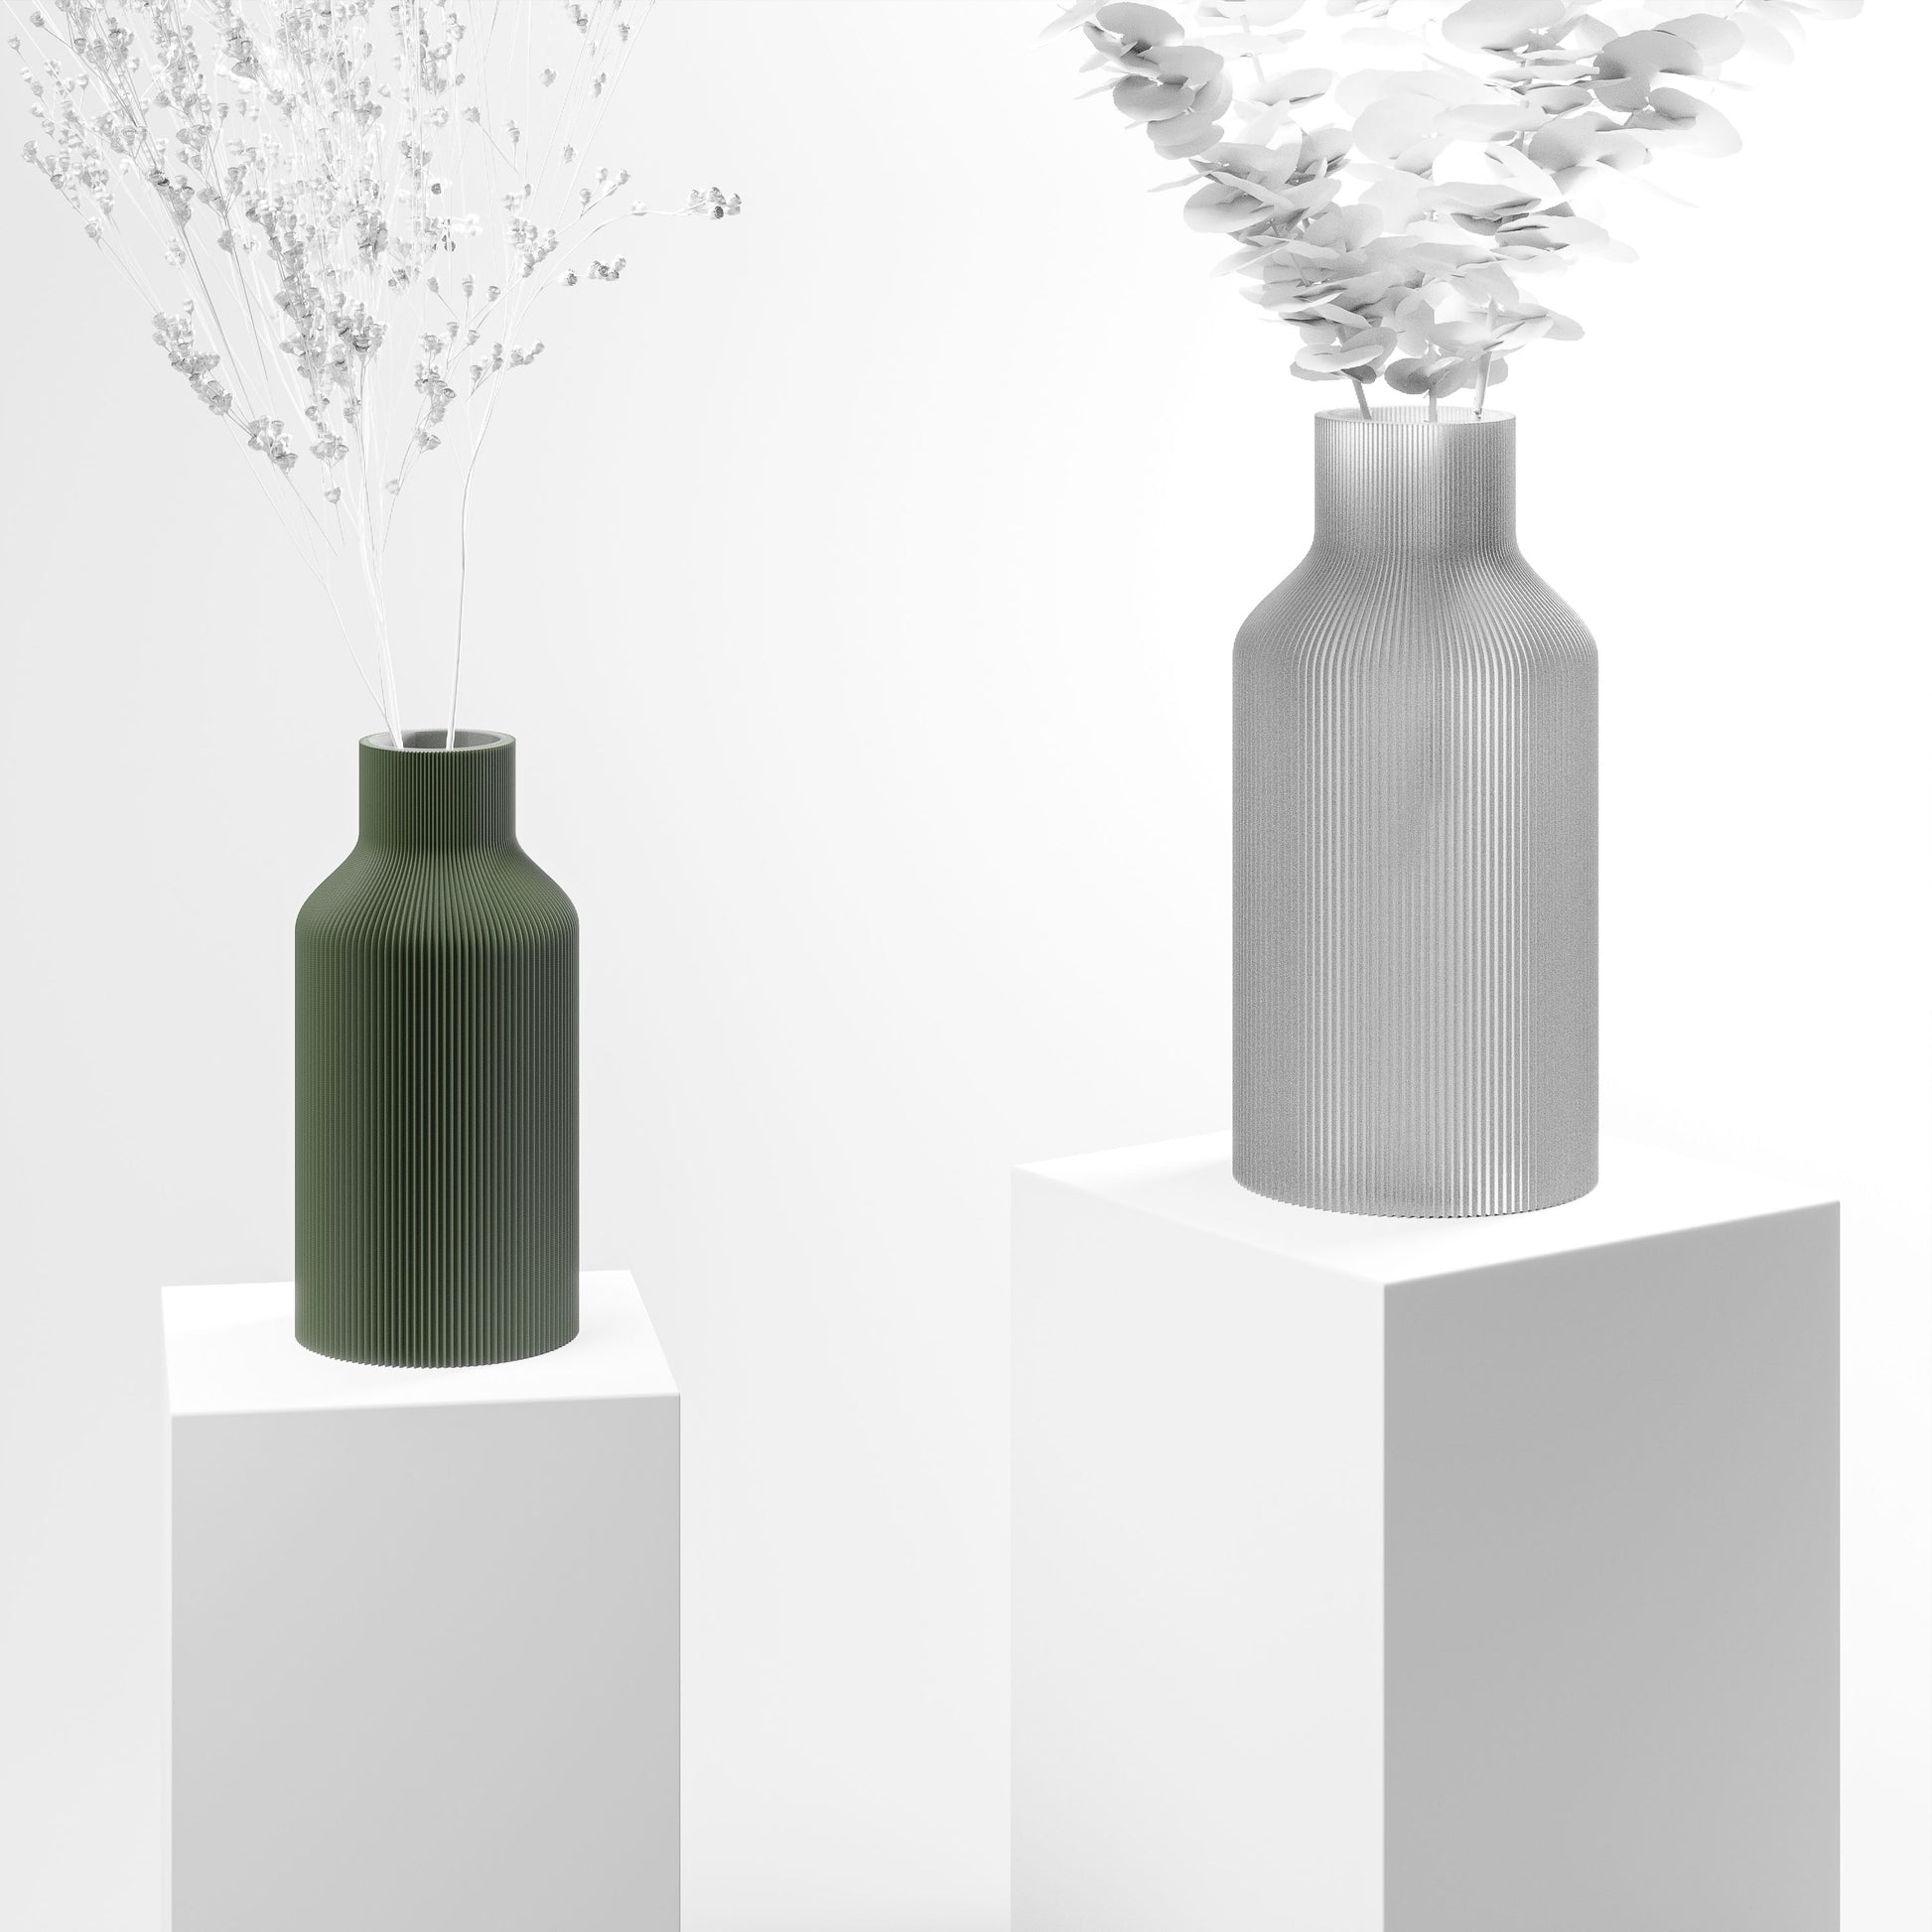 Stylische 3D Druck Vase mit feinen Rillen aus Stuttgart | 100% recyclebar | Form: Flasche | Farbe: grün matt klein 